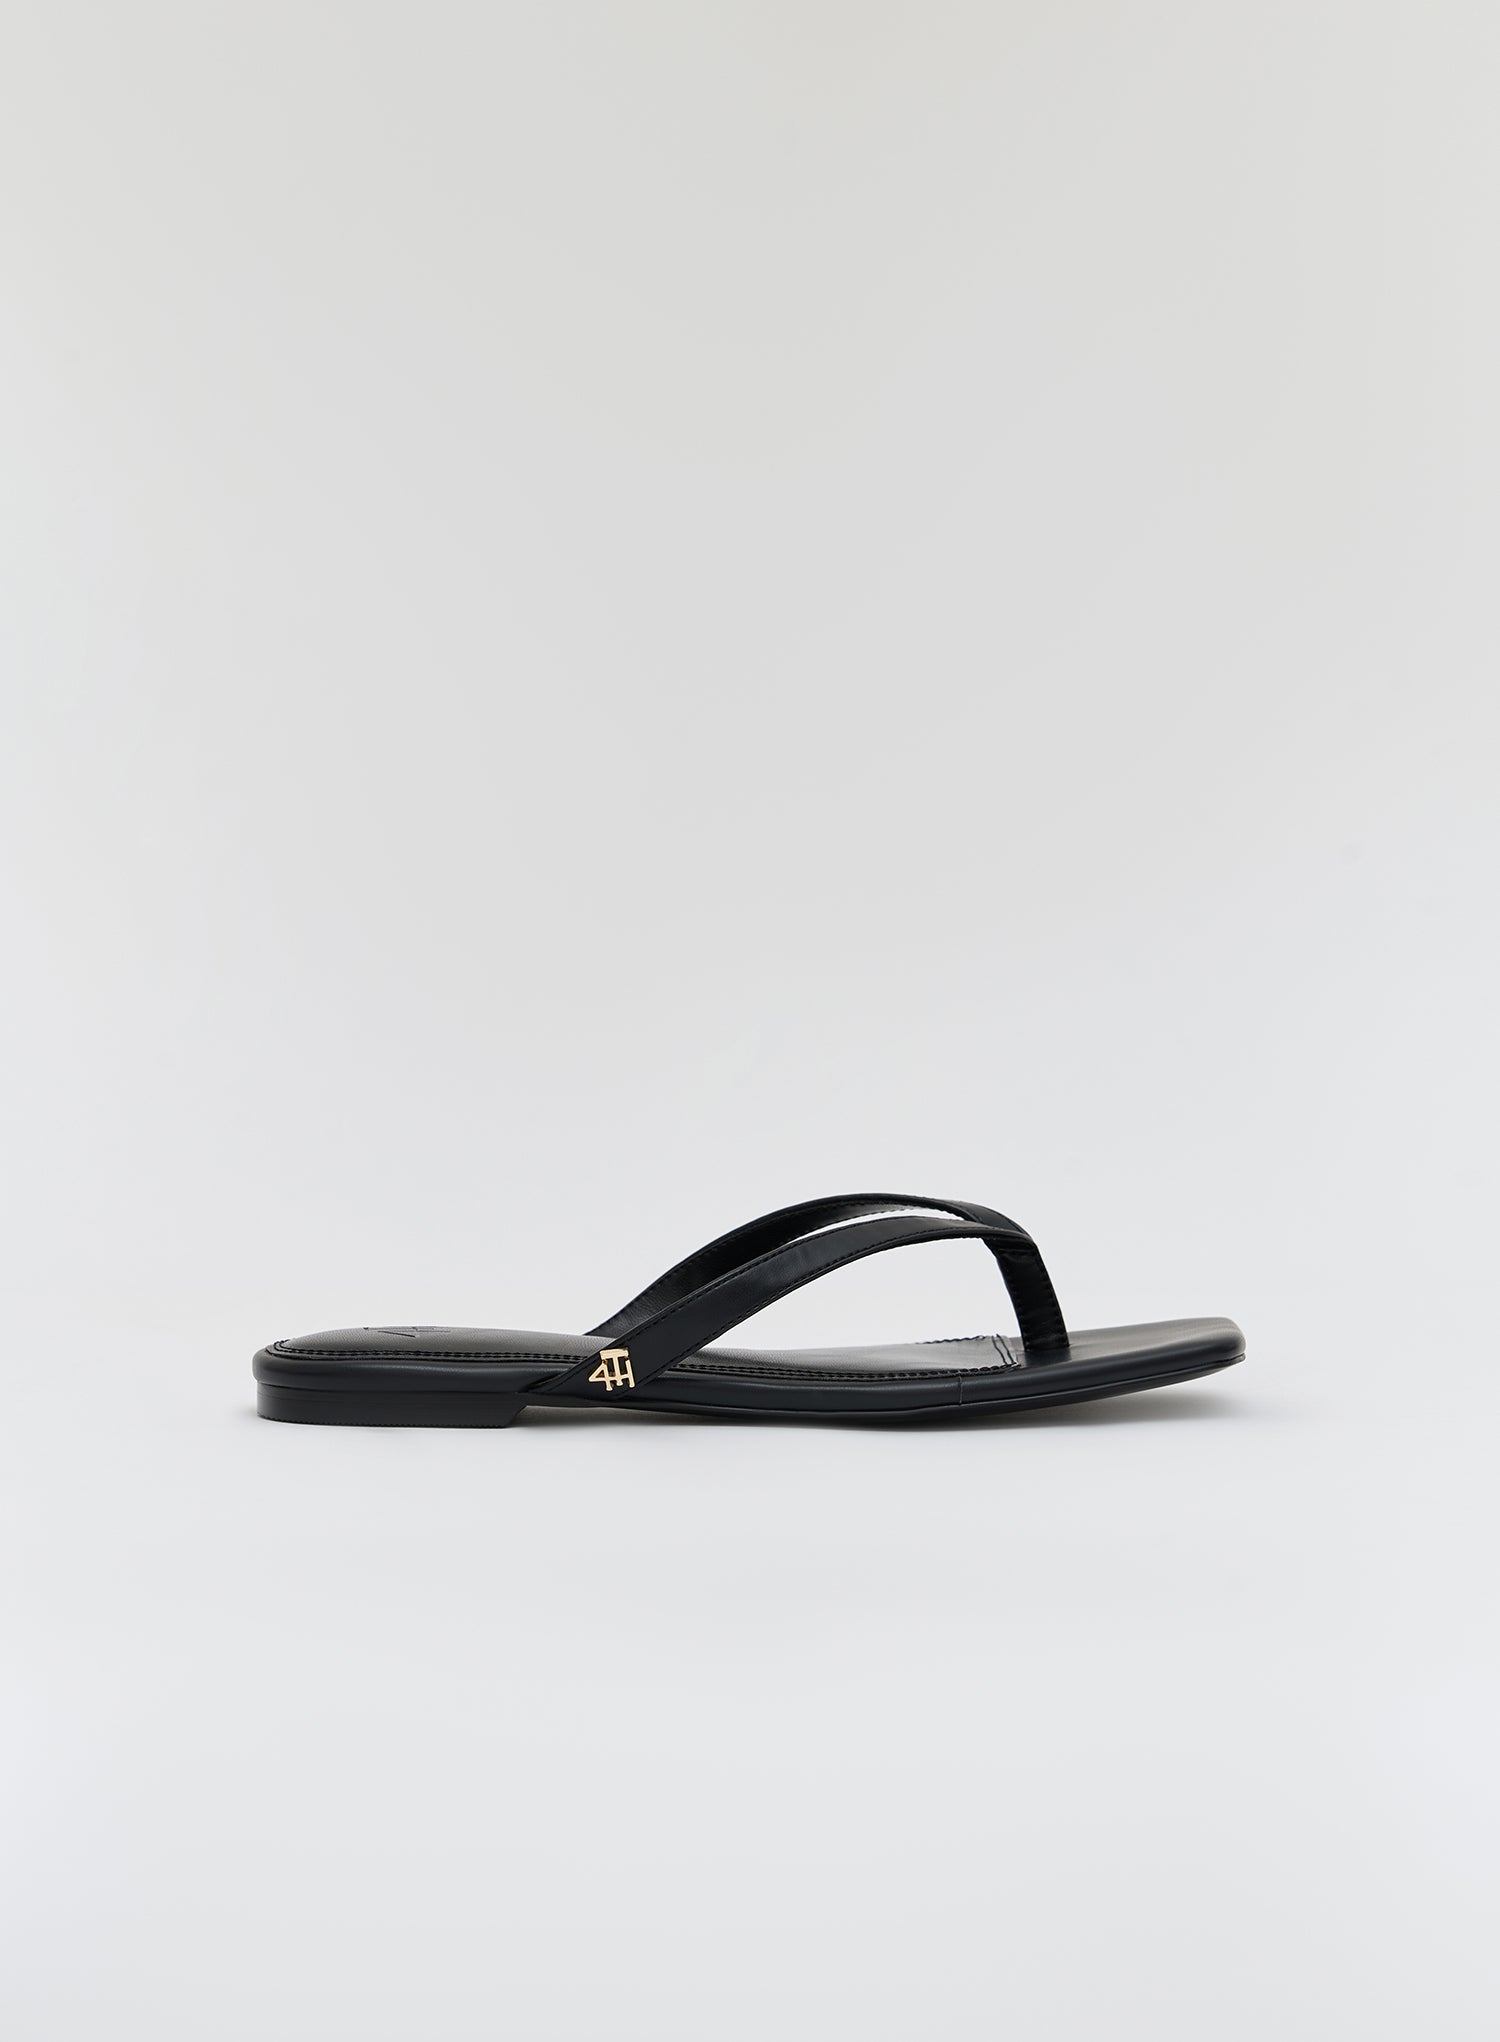 Image of Black PU Slip On Sandal- Mila